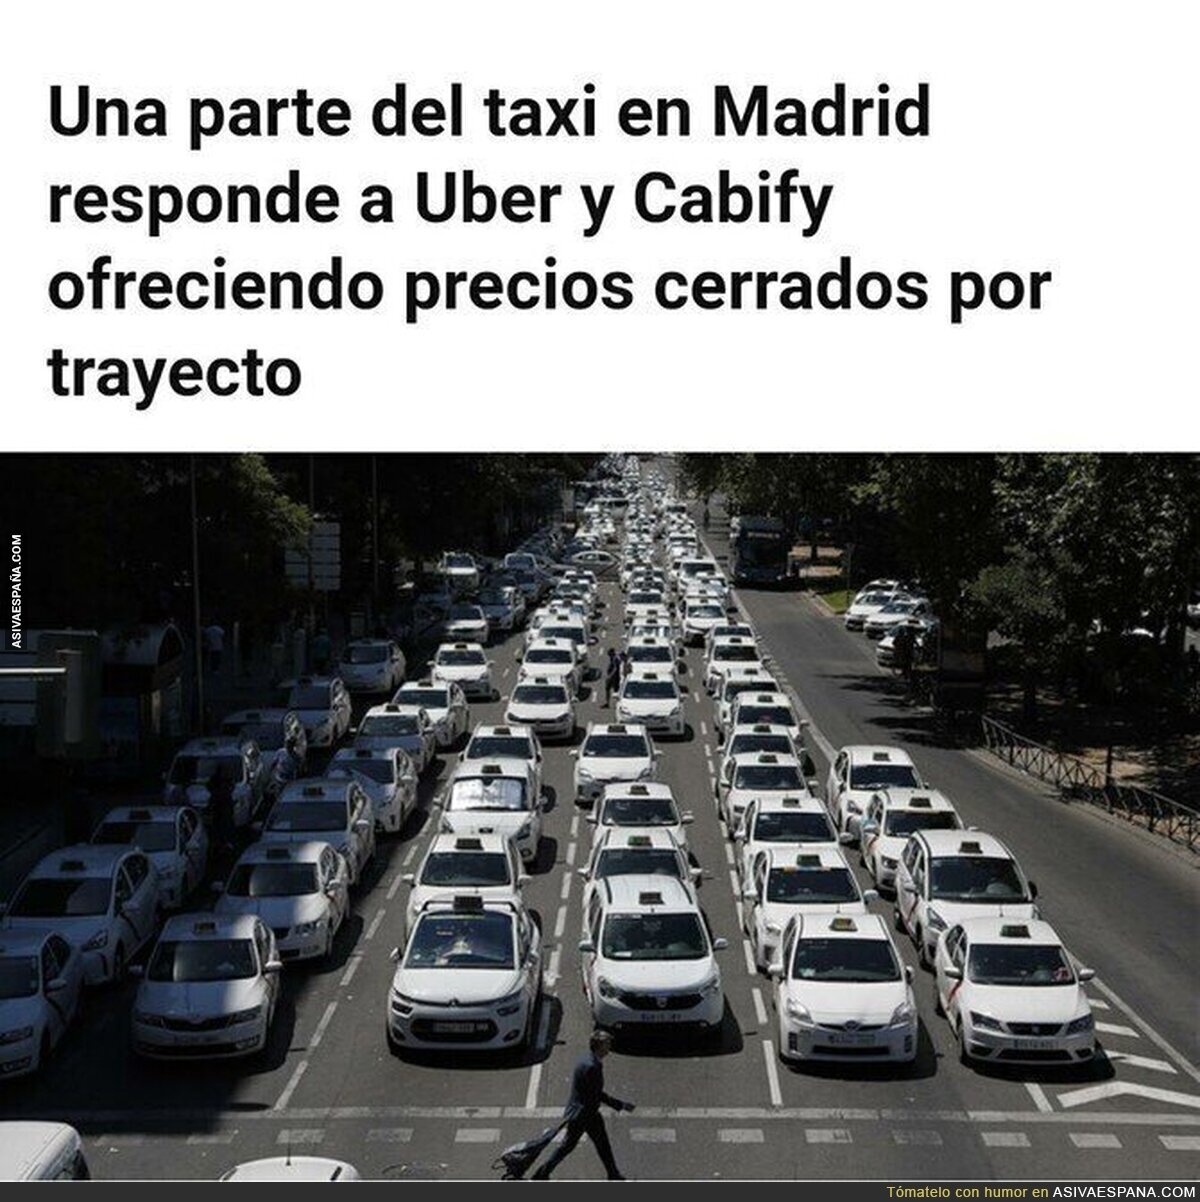 Los taxistas madrileños se rebelan y ofrecen precios cerrados para competir con Cabify y Uber